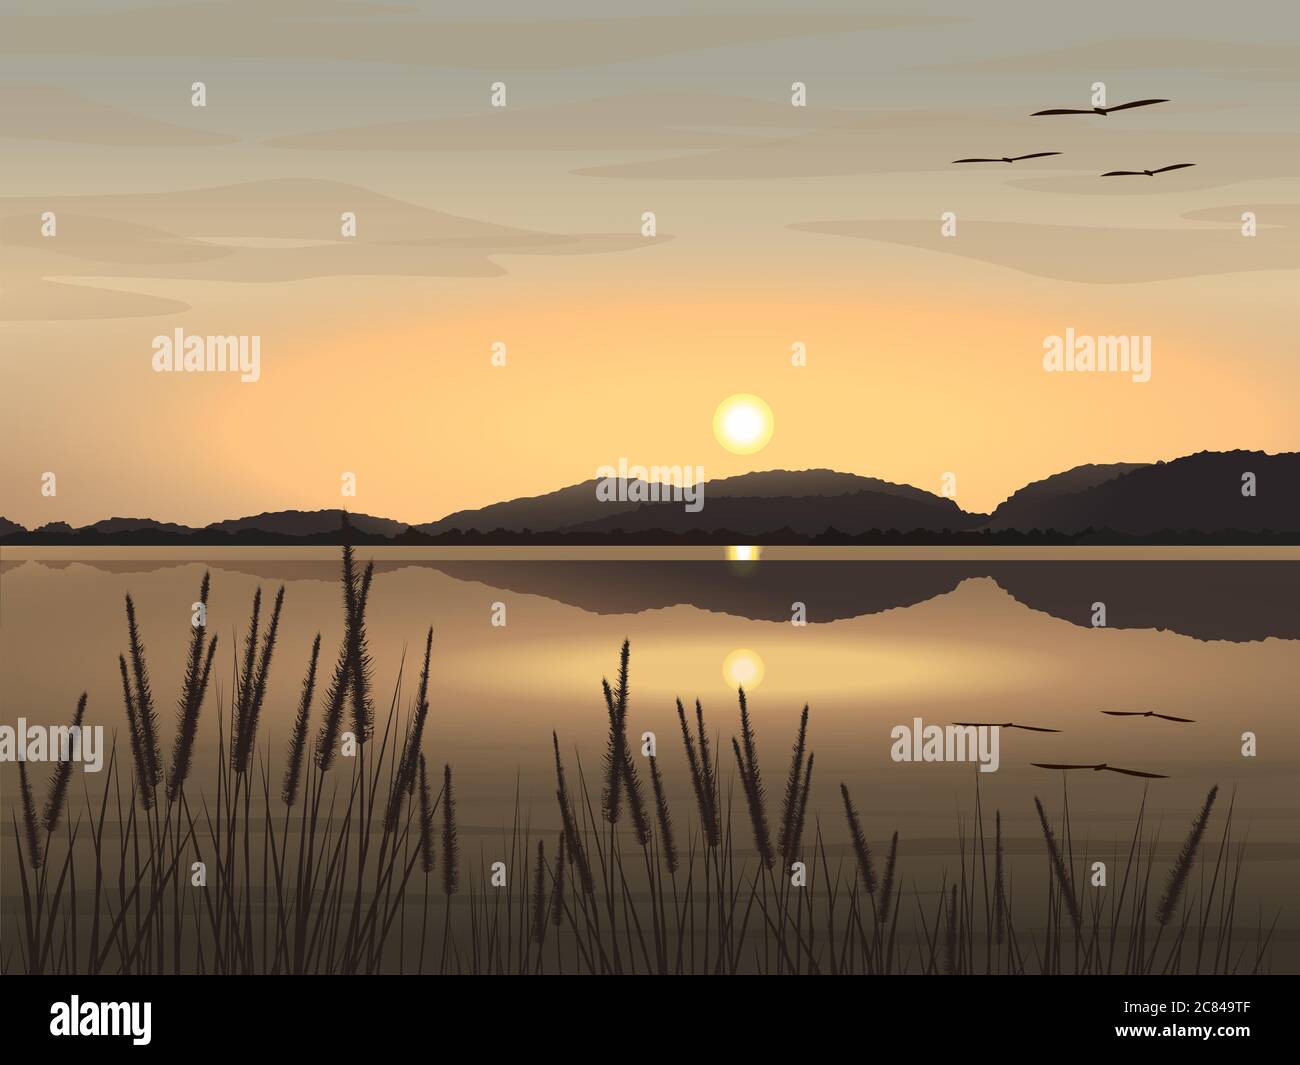 Immagine vettoriale bella immagine paesaggistica naturale di lago, montagne, cielo serale il sole è tramontare, erba e uccelli volare. Illustrazione Vettoriale